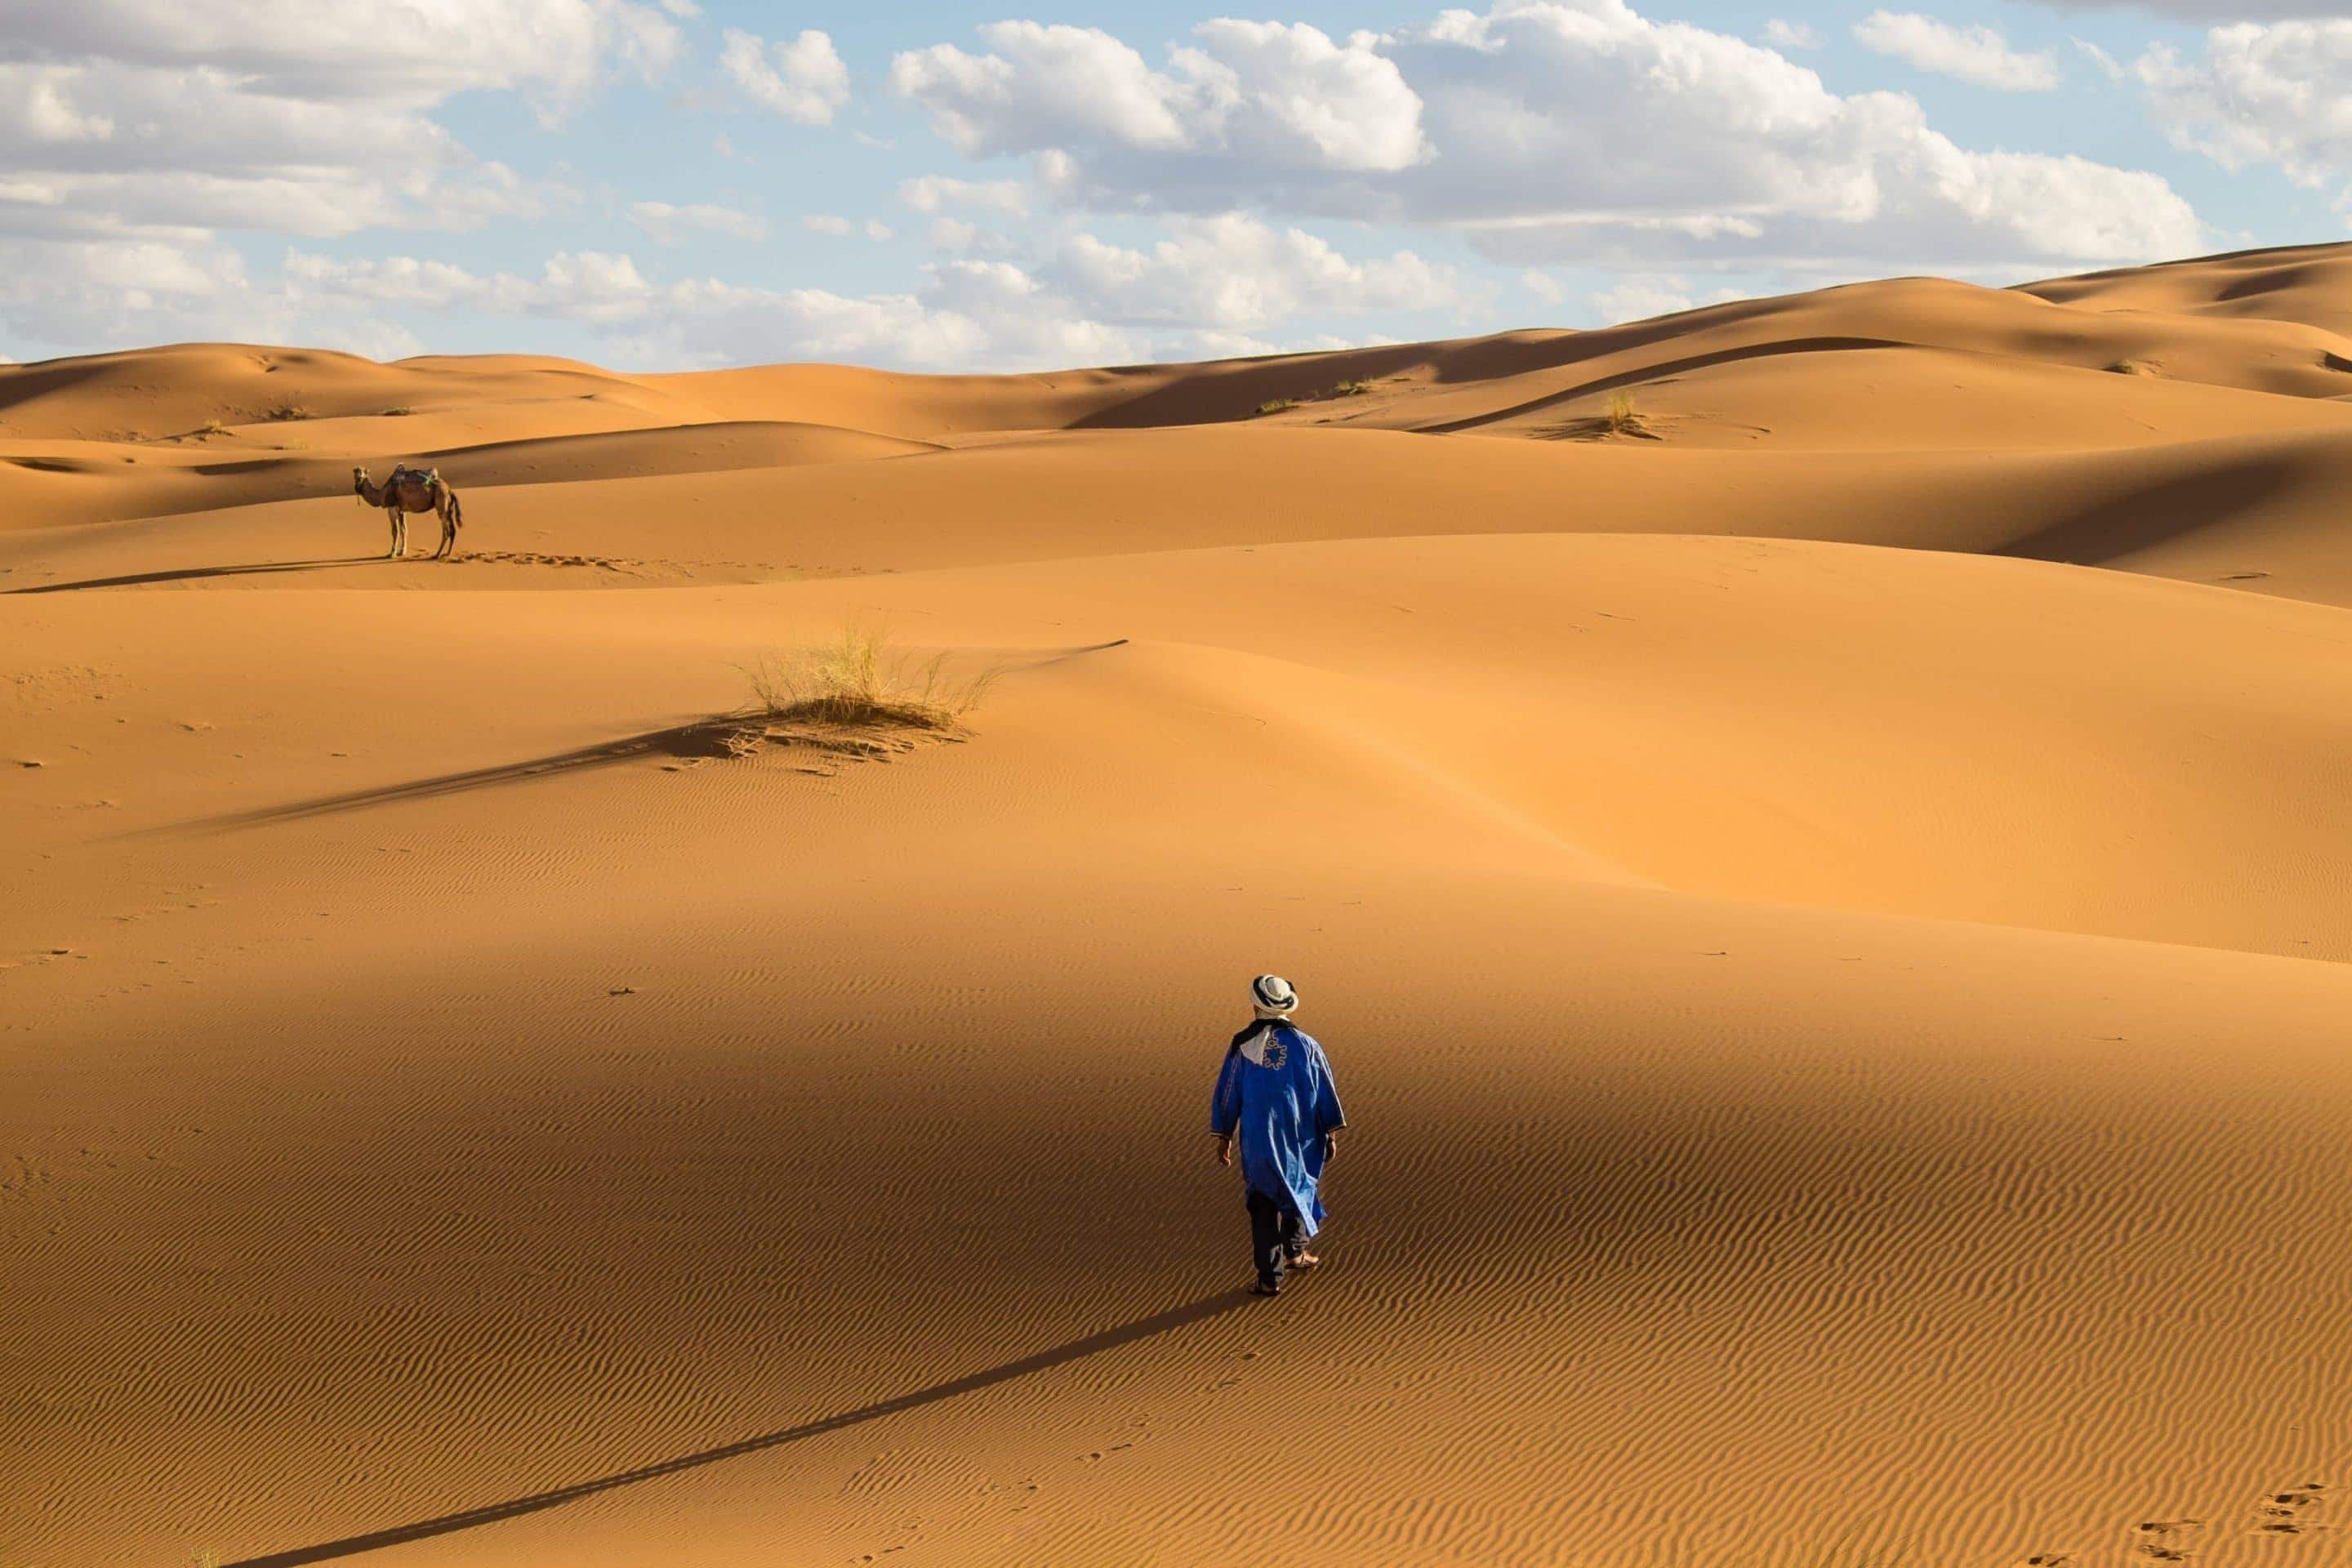 tour the sahara desert